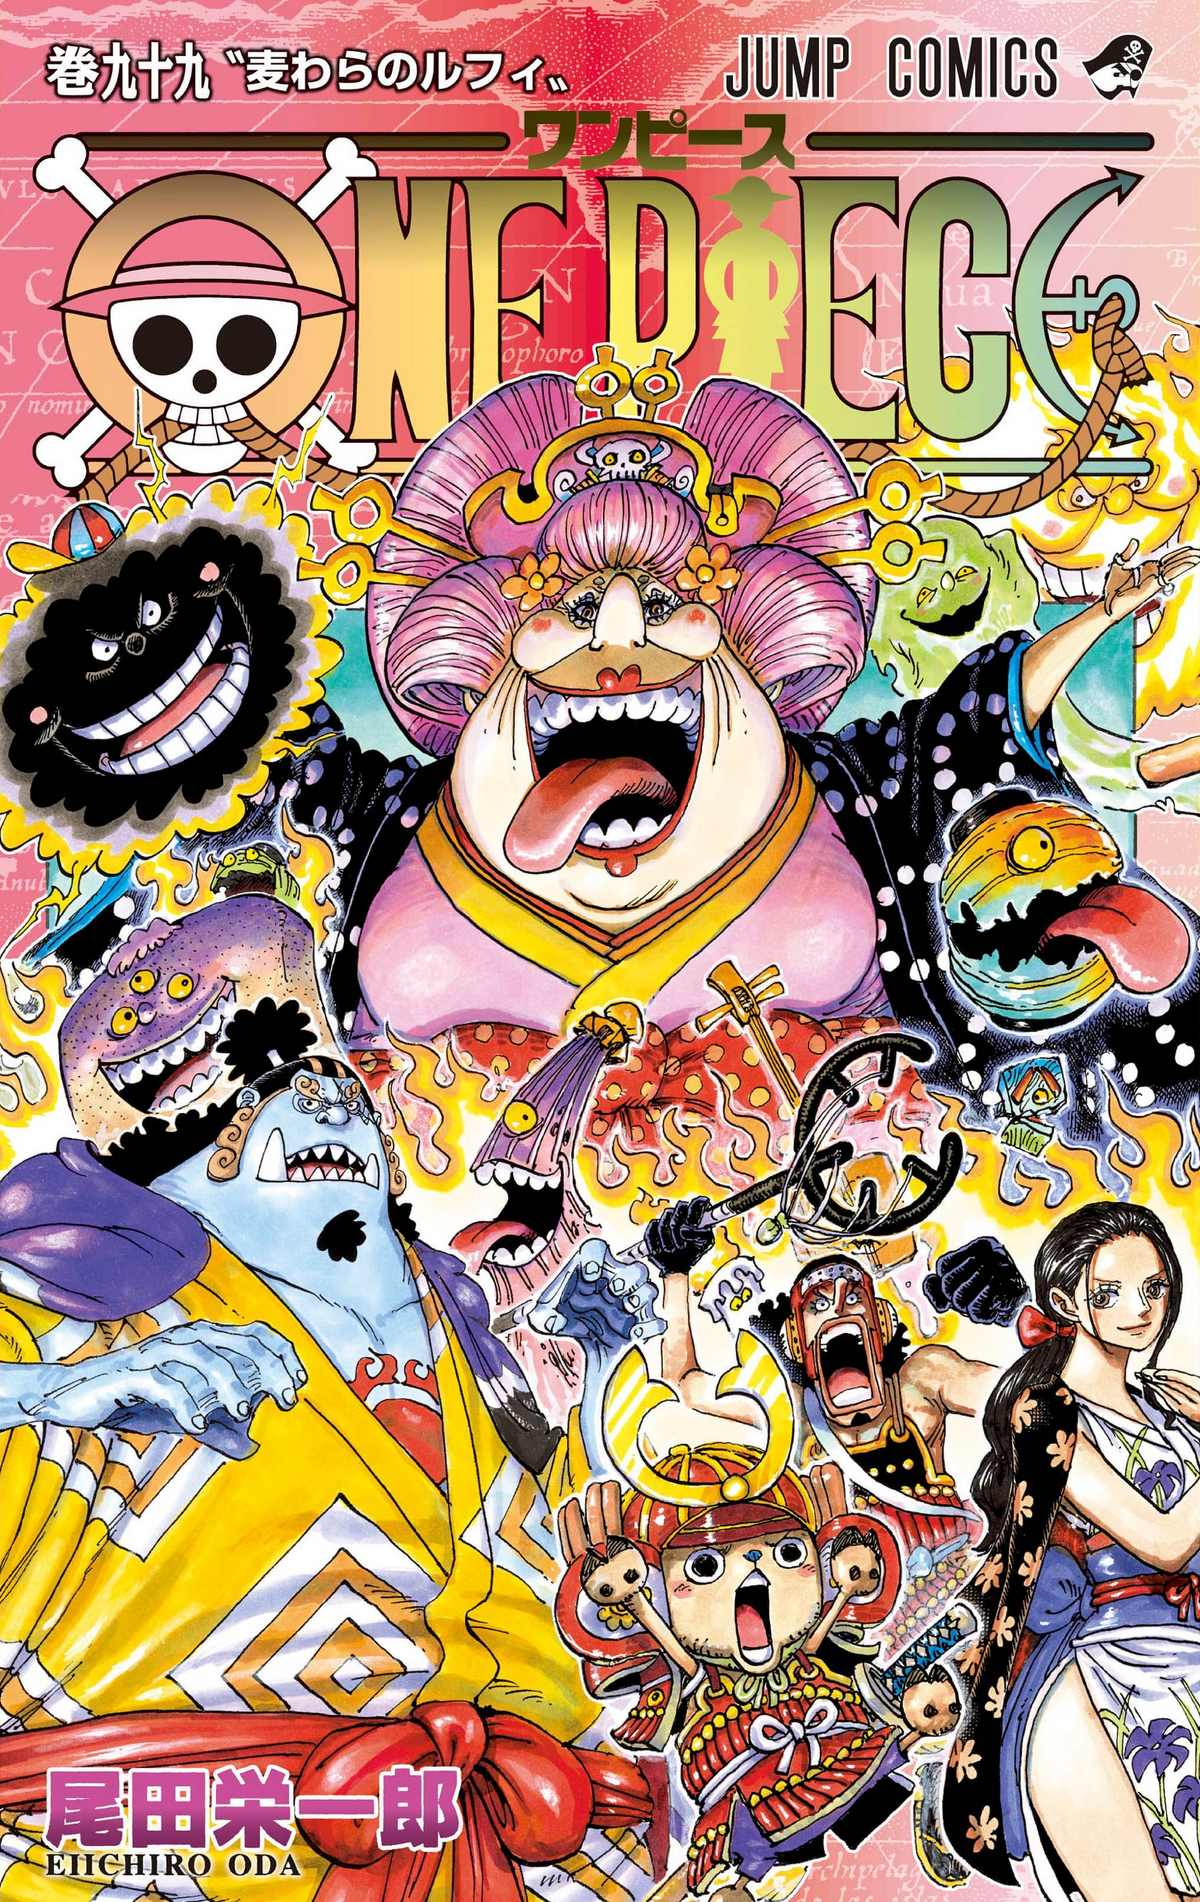 One Piece UP - Luffy e o Gear 5th Na SBS do volume 98, um leitor